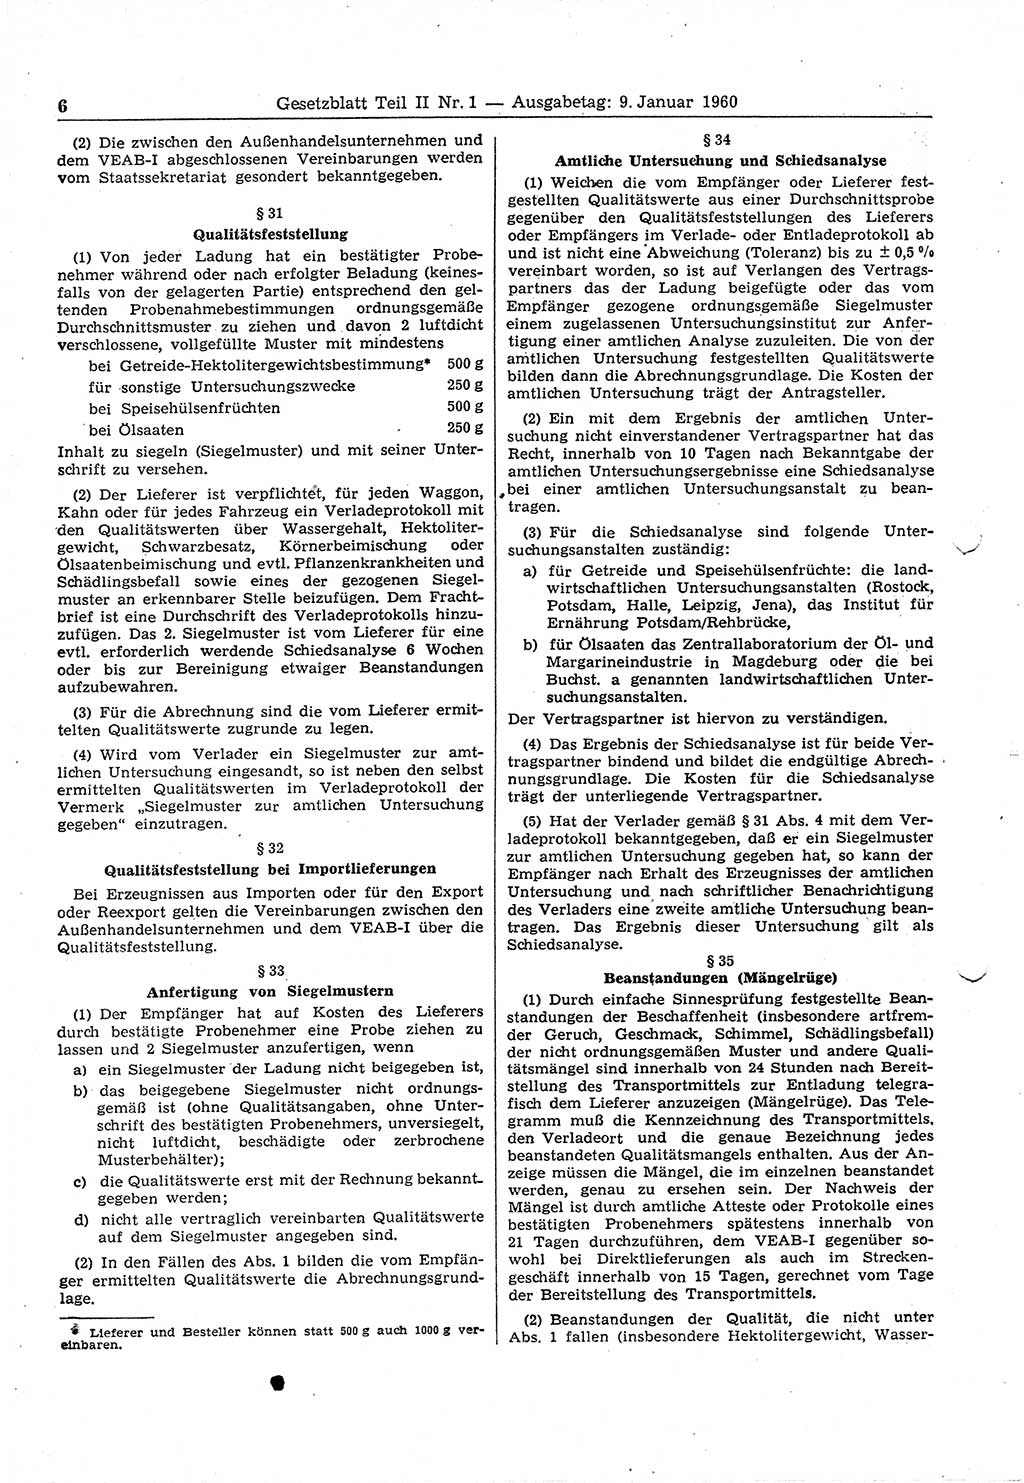 Gesetzblatt (GBl.) der Deutschen Demokratischen Republik (DDR) Teil ⅠⅠ 1960, Seite 6 (GBl. DDR ⅠⅠ 1960, S. 6)